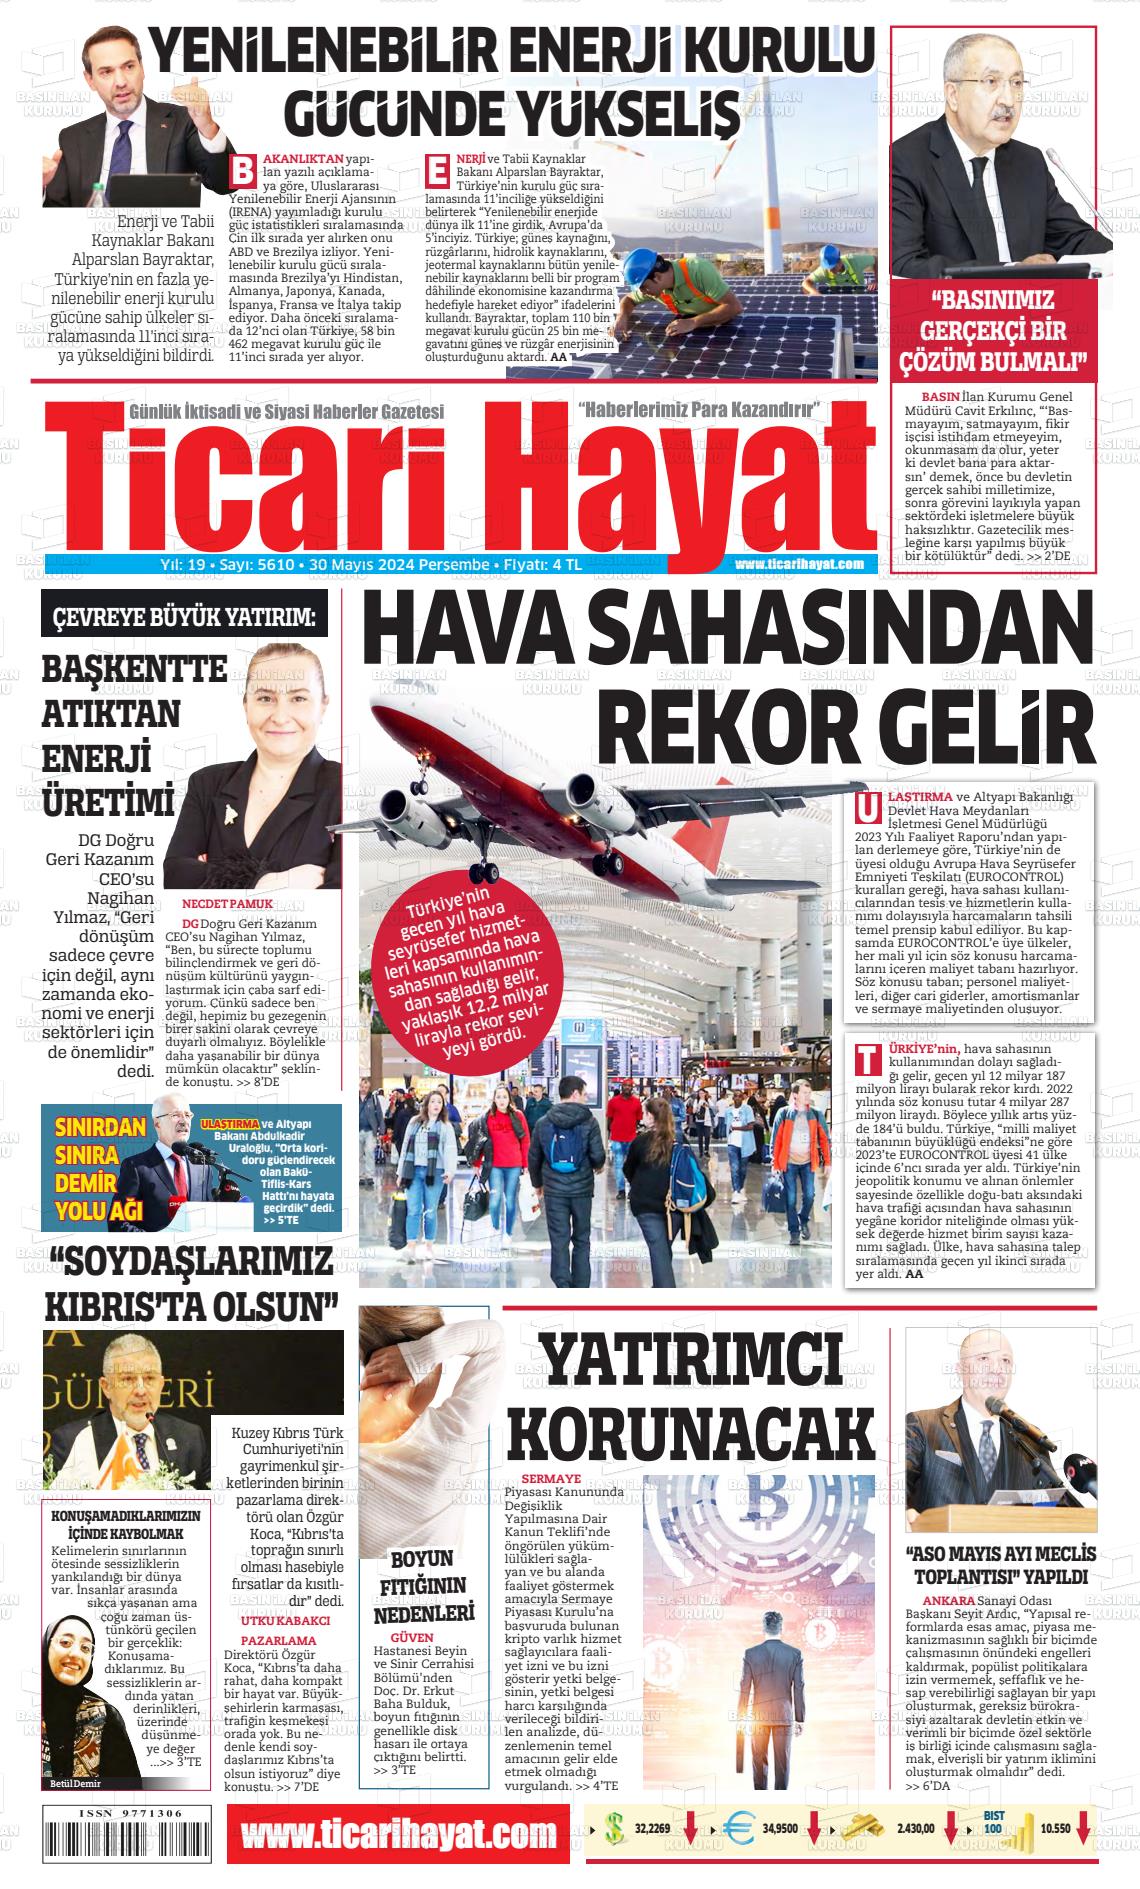 TİCARİ HAYAT Gazetesi